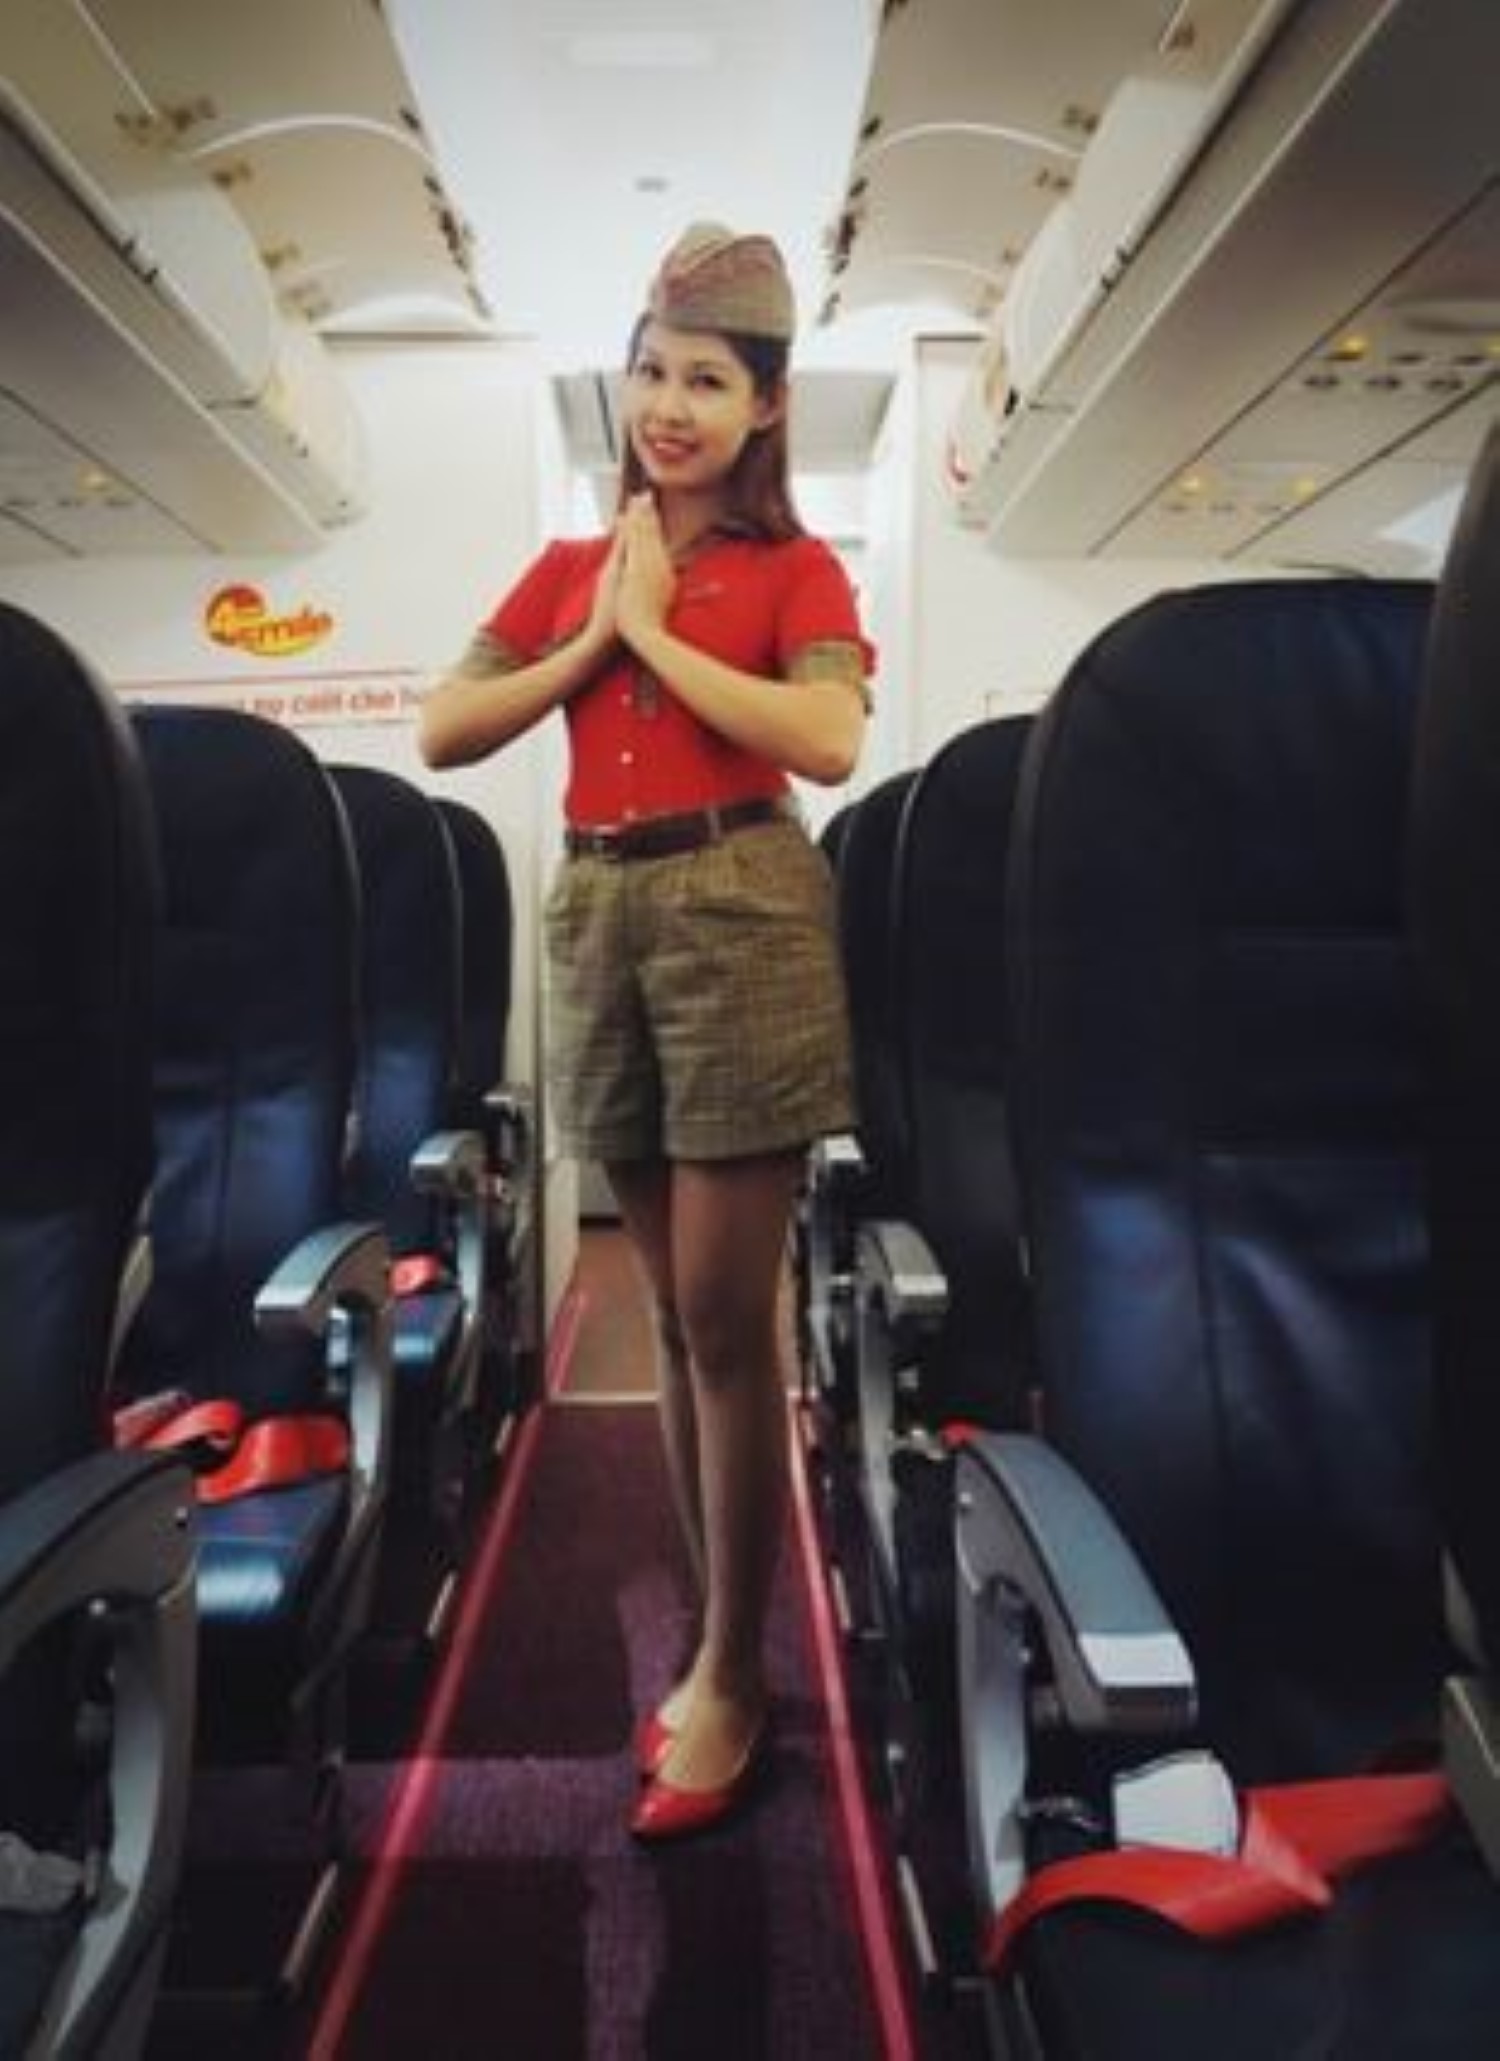  မြန်မာ လေယာဉ်မောင်မယ်များ Vietjet လေကြောင်းလိုင်းဖြင့် ကောင်းကင်ပေါ်တွင် ပျံသန်းနိုင်ပြီ